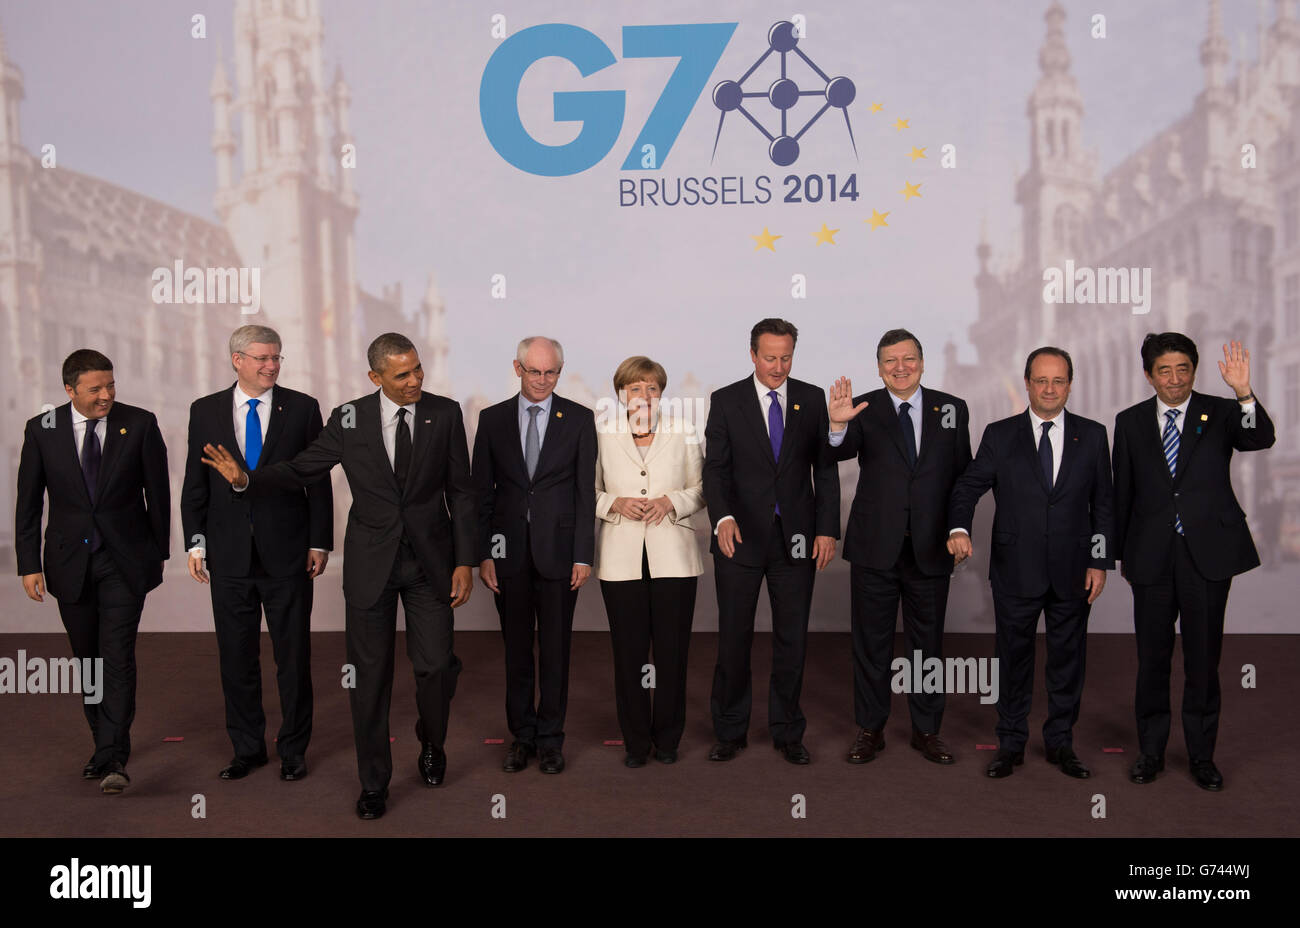 G7-Führer posieren für ein Familienfoto von (links - rechts) dem italienischen Premierminister Matteo Renzi, dem kanadischen Premierminister Stephen Harper, US-Präsident Barack Obama, dem Präsidenten des Europäischen Rates, Herman Van Rompuy, Bundeskanzlerin Angela Merkel, dem britischen Premierminister David Cameron, dem EU-Kommissionspräsidenten Jose Manuel Barosso, Der französische Präsident Francois Hollande und der japanische Premierminister Shinzo Abe während des G7-Gipfels am EU-Hauptsitz in Brüssel, Belgien. Stockfoto